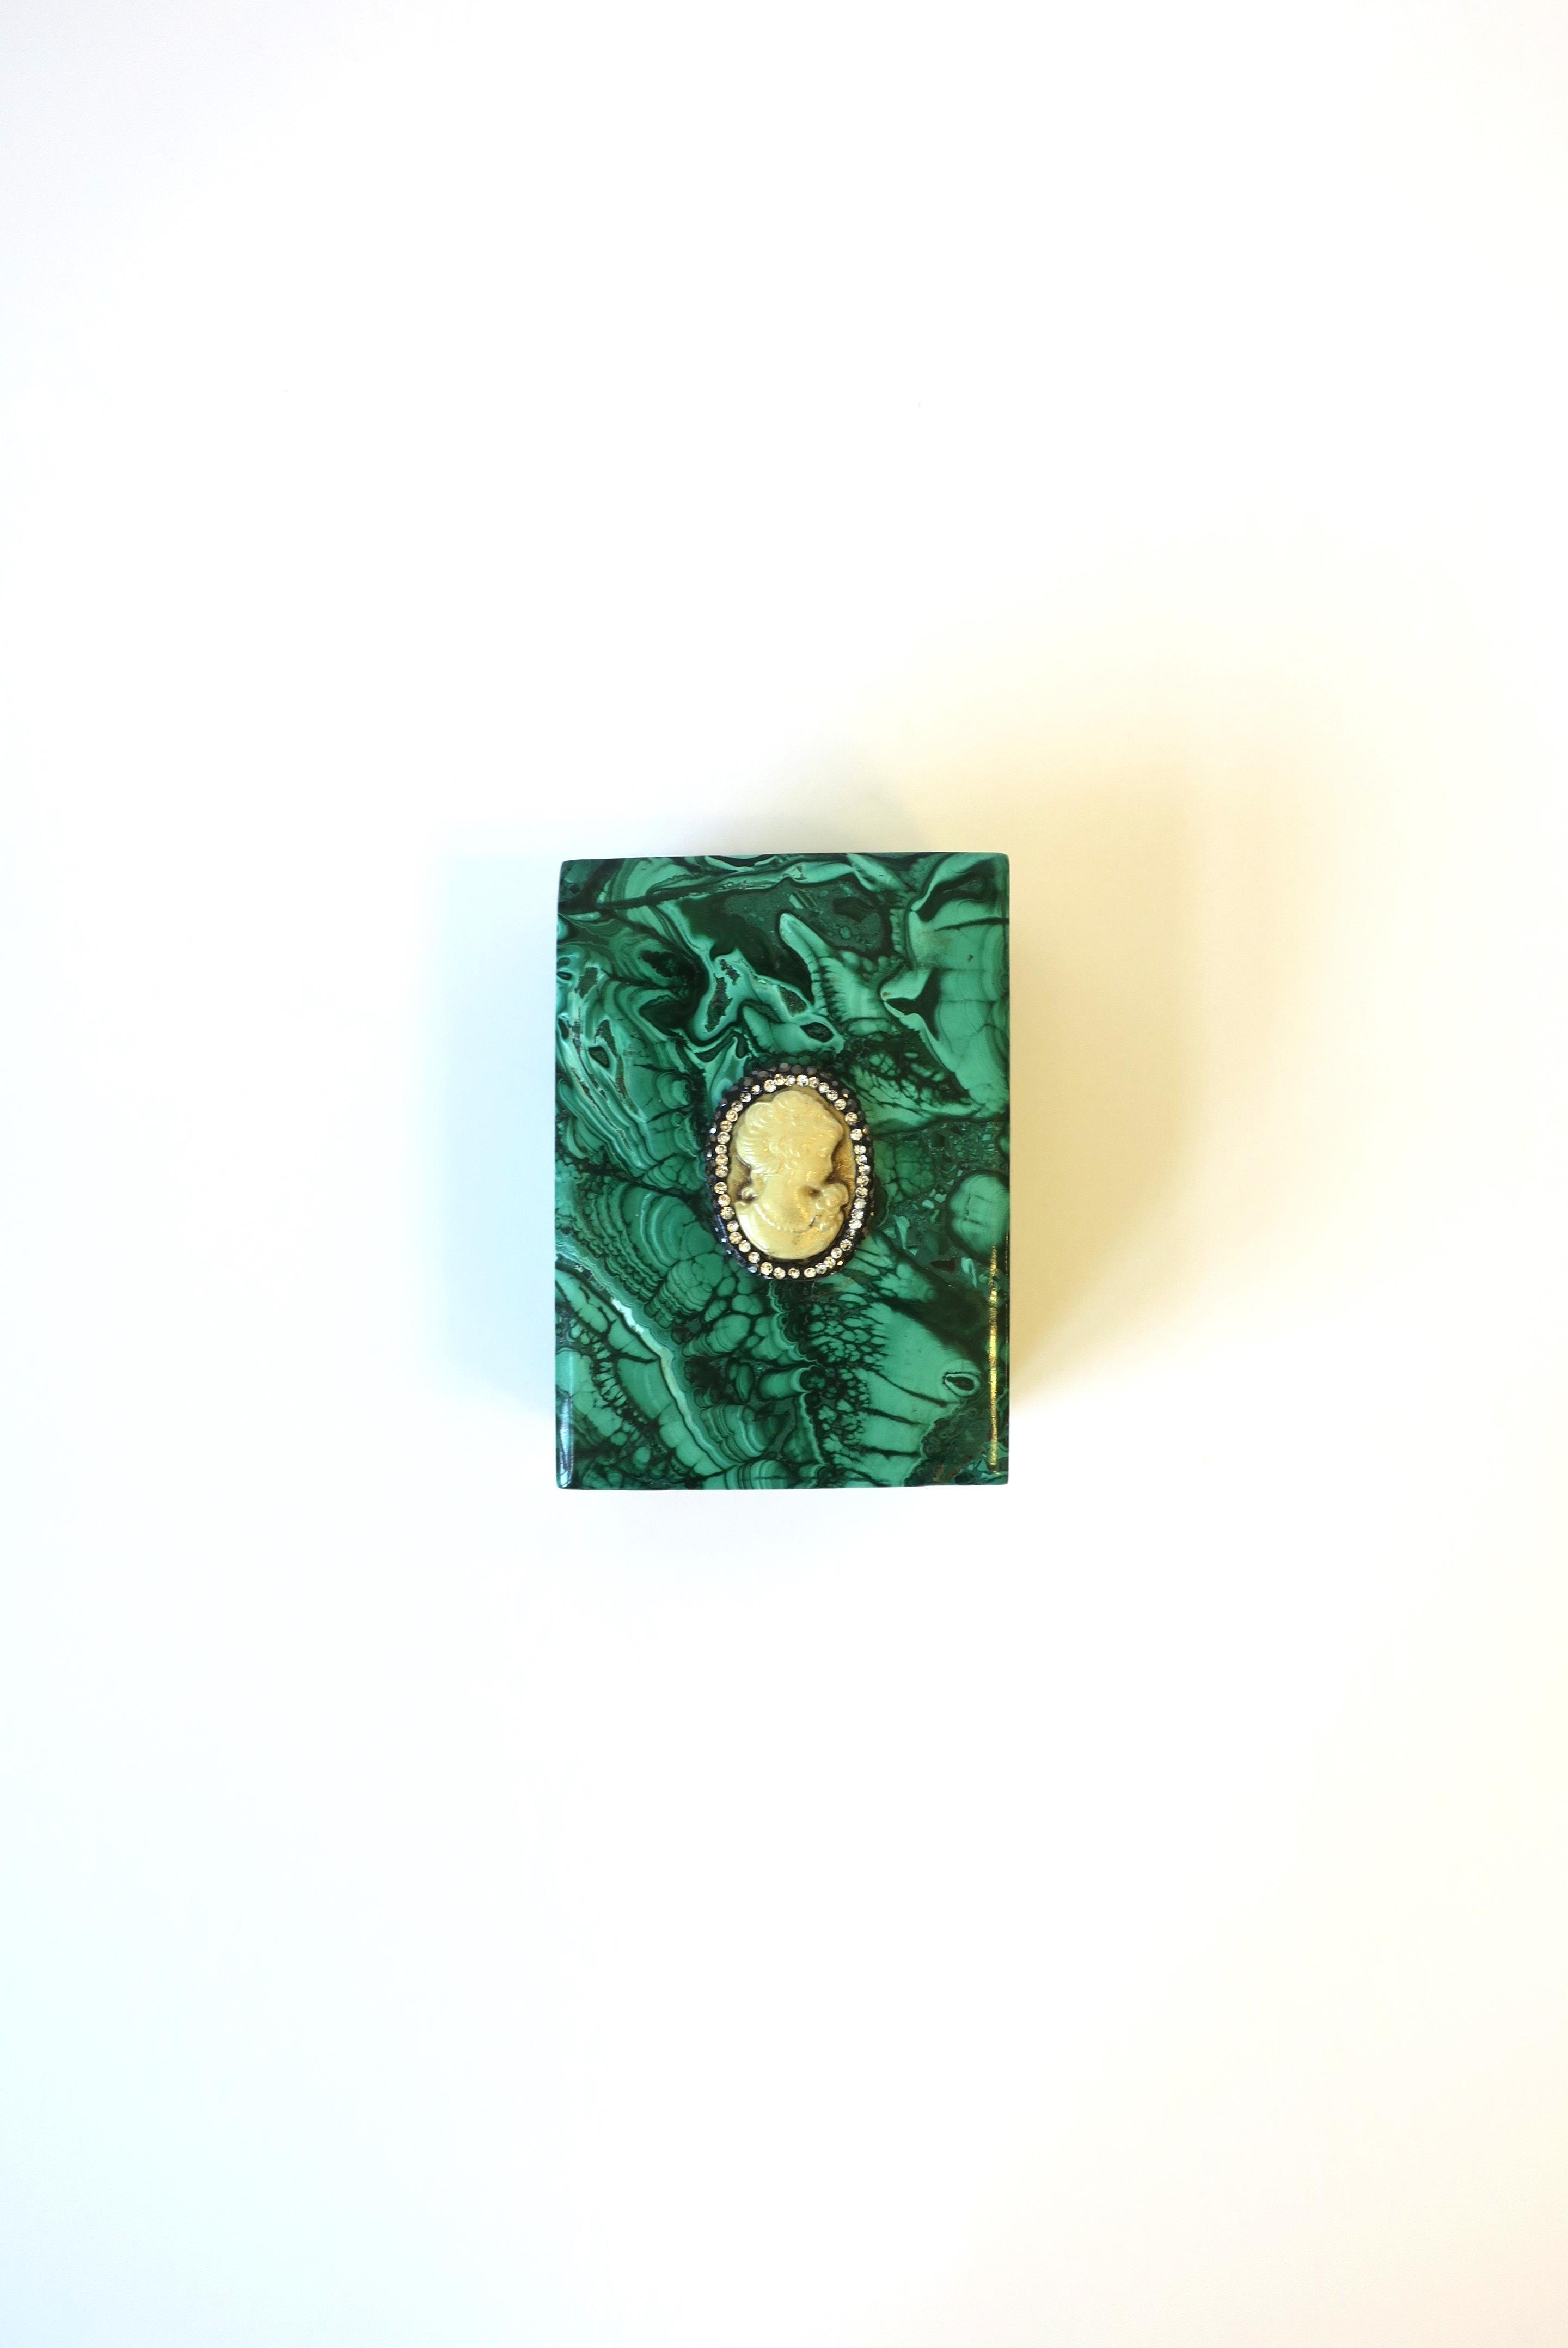 Une belle et substantielle boîte à bijoux ou décorative en malachite verte, vers la fin du 20e siècle. La boîte est de forme rectangulaire avec un camée féminin en résine sur le couvercle supérieur. La pièce est magnifiquement fabriquée à la main.